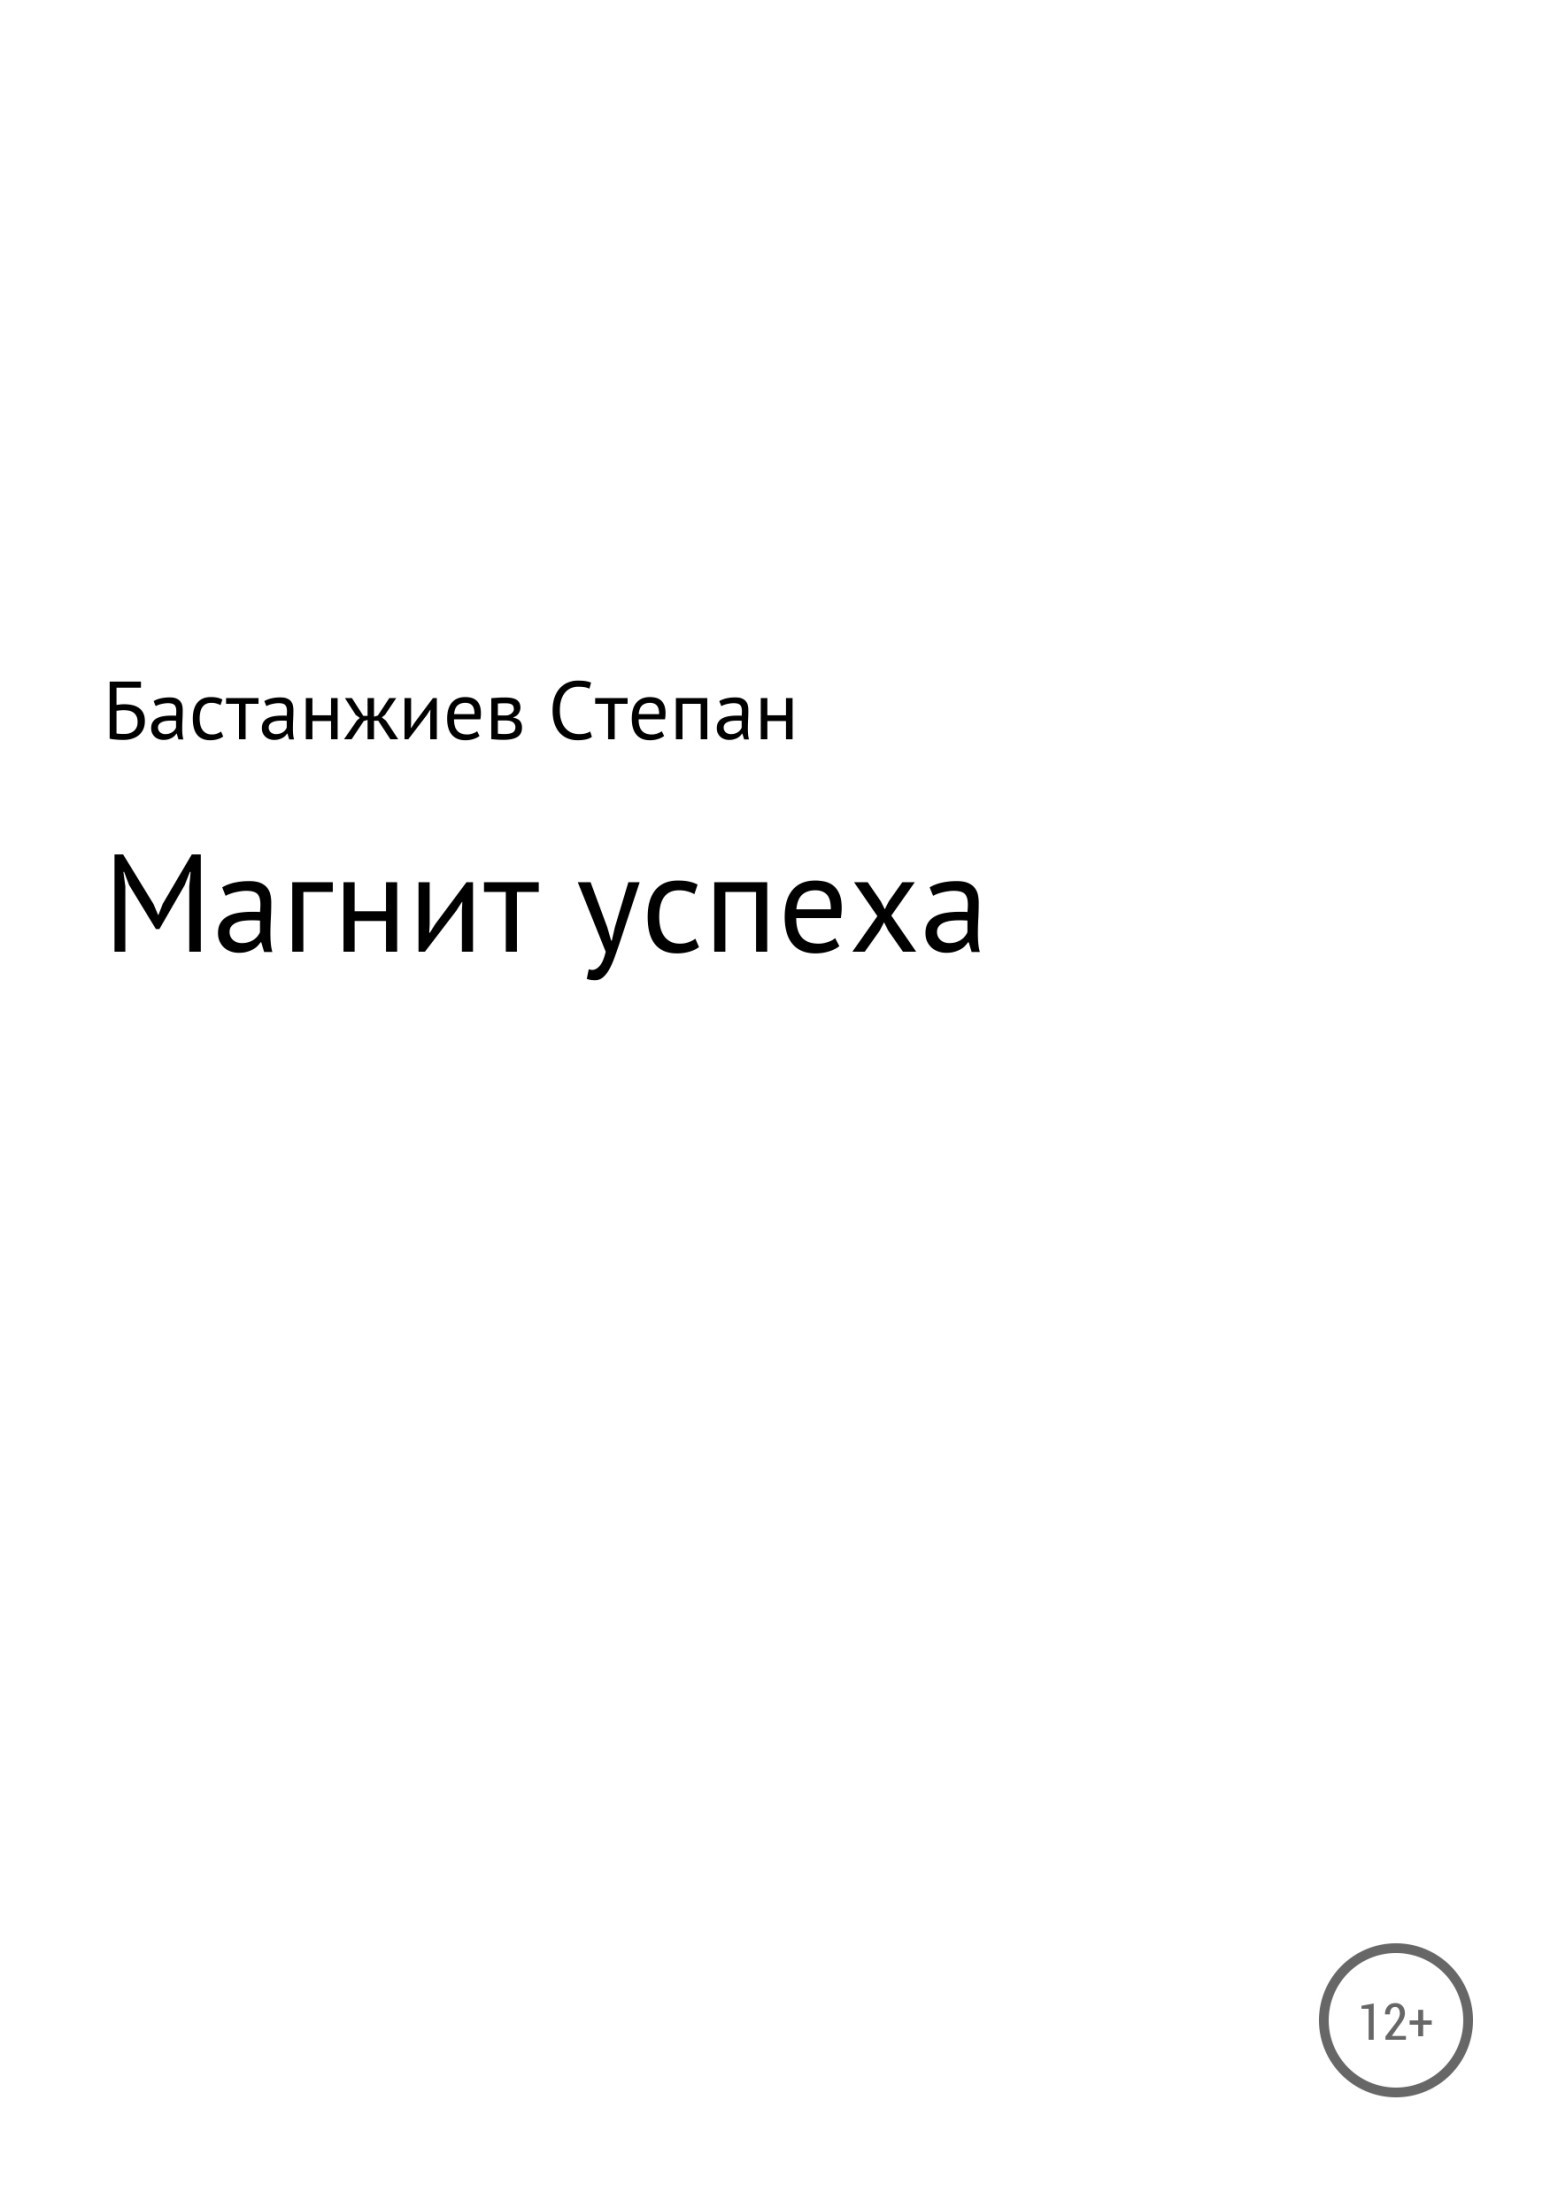 Книга Магнит успеха из серии , созданная Степан Бастанжиев, может относится к жанру Самосовершенствование, Личные финансы. Стоимость электронной книги Магнит успеха с идентификатором 34999577 составляет 0 руб.